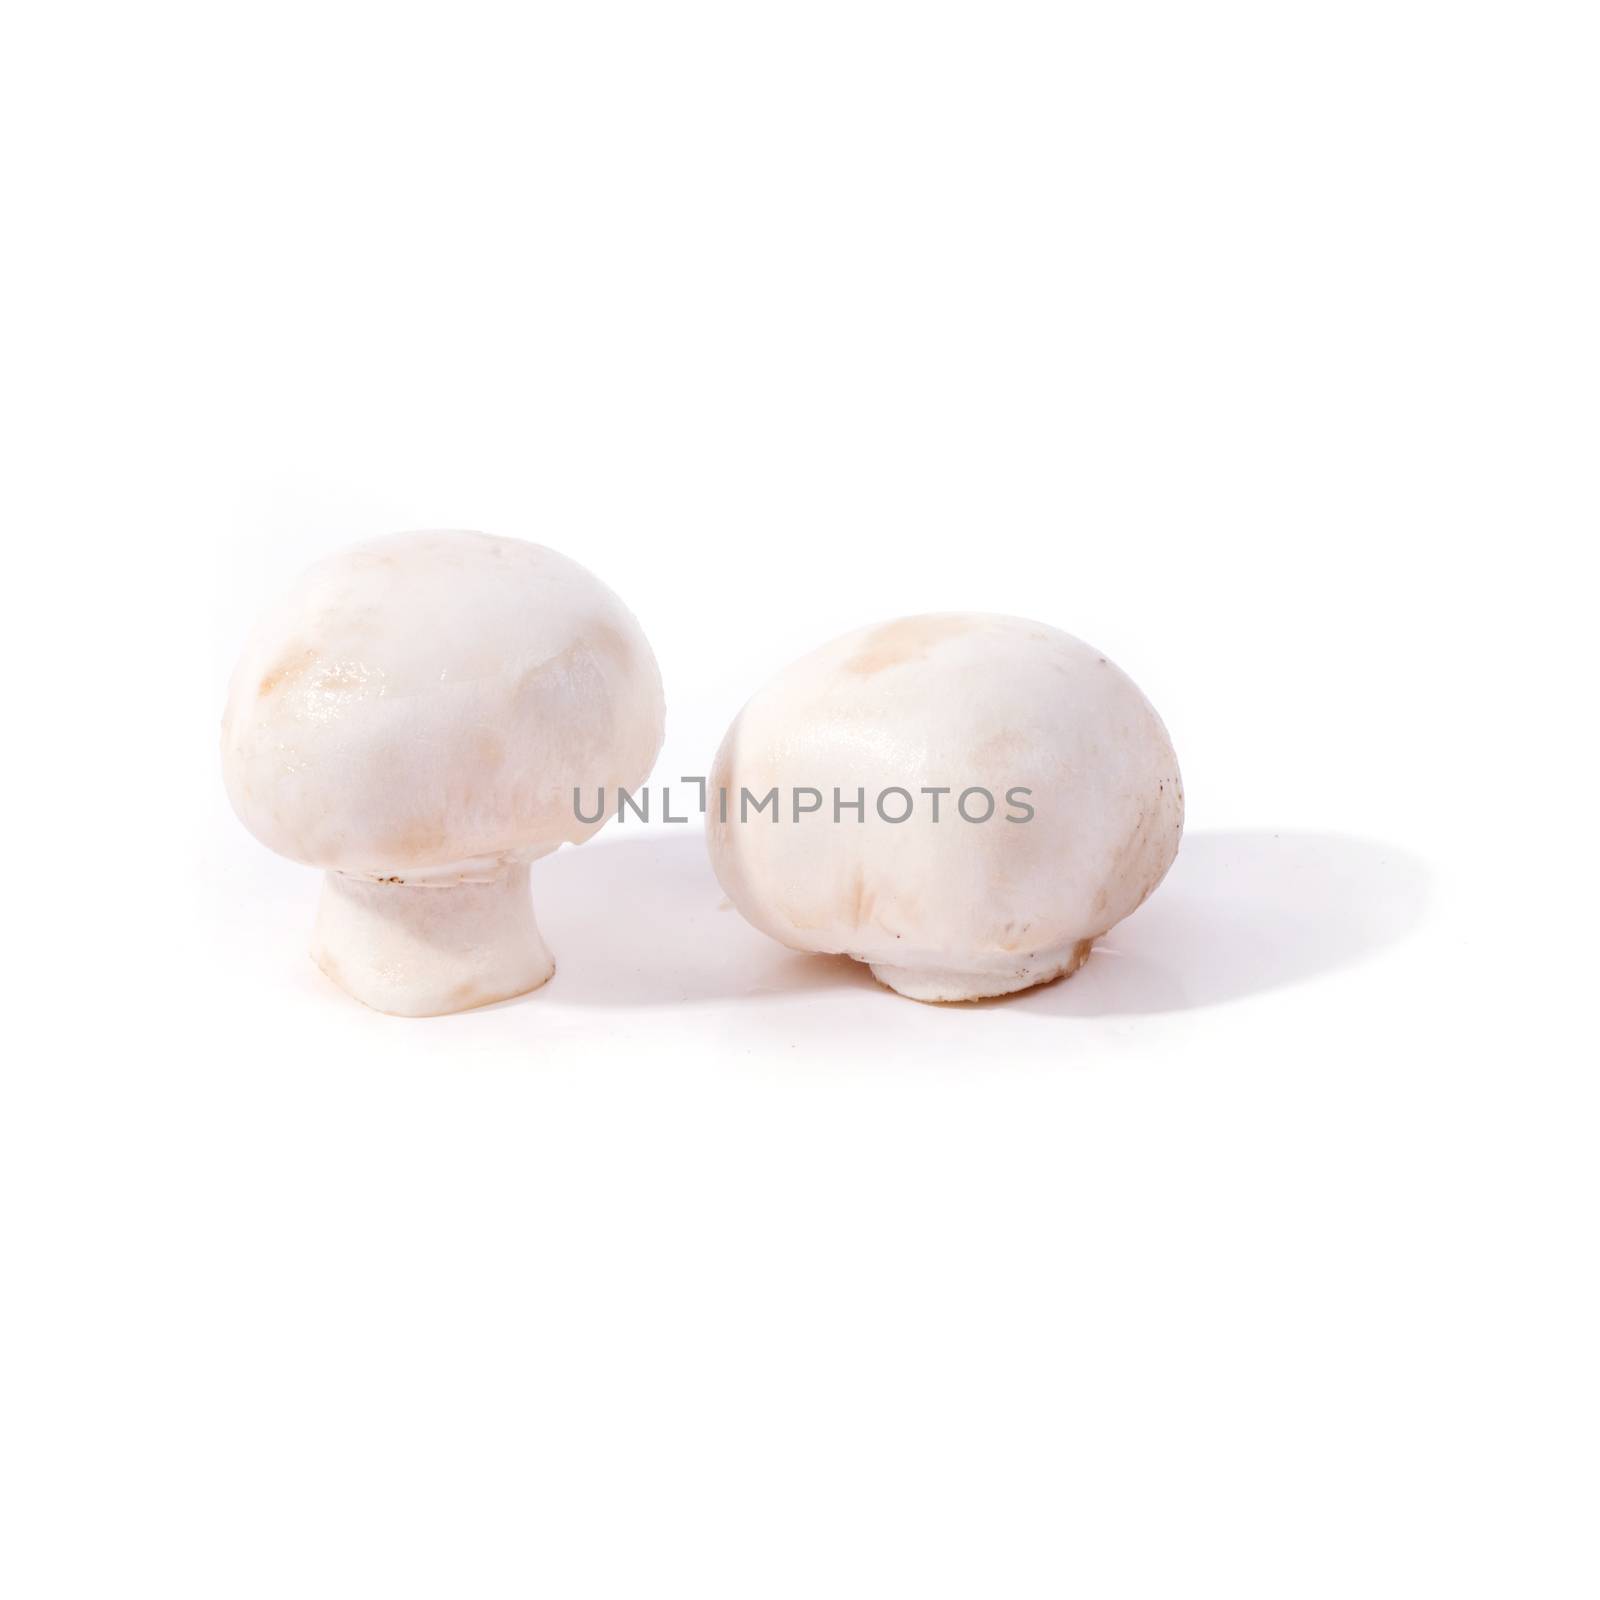 Mushrooms on the table by rufatjumali